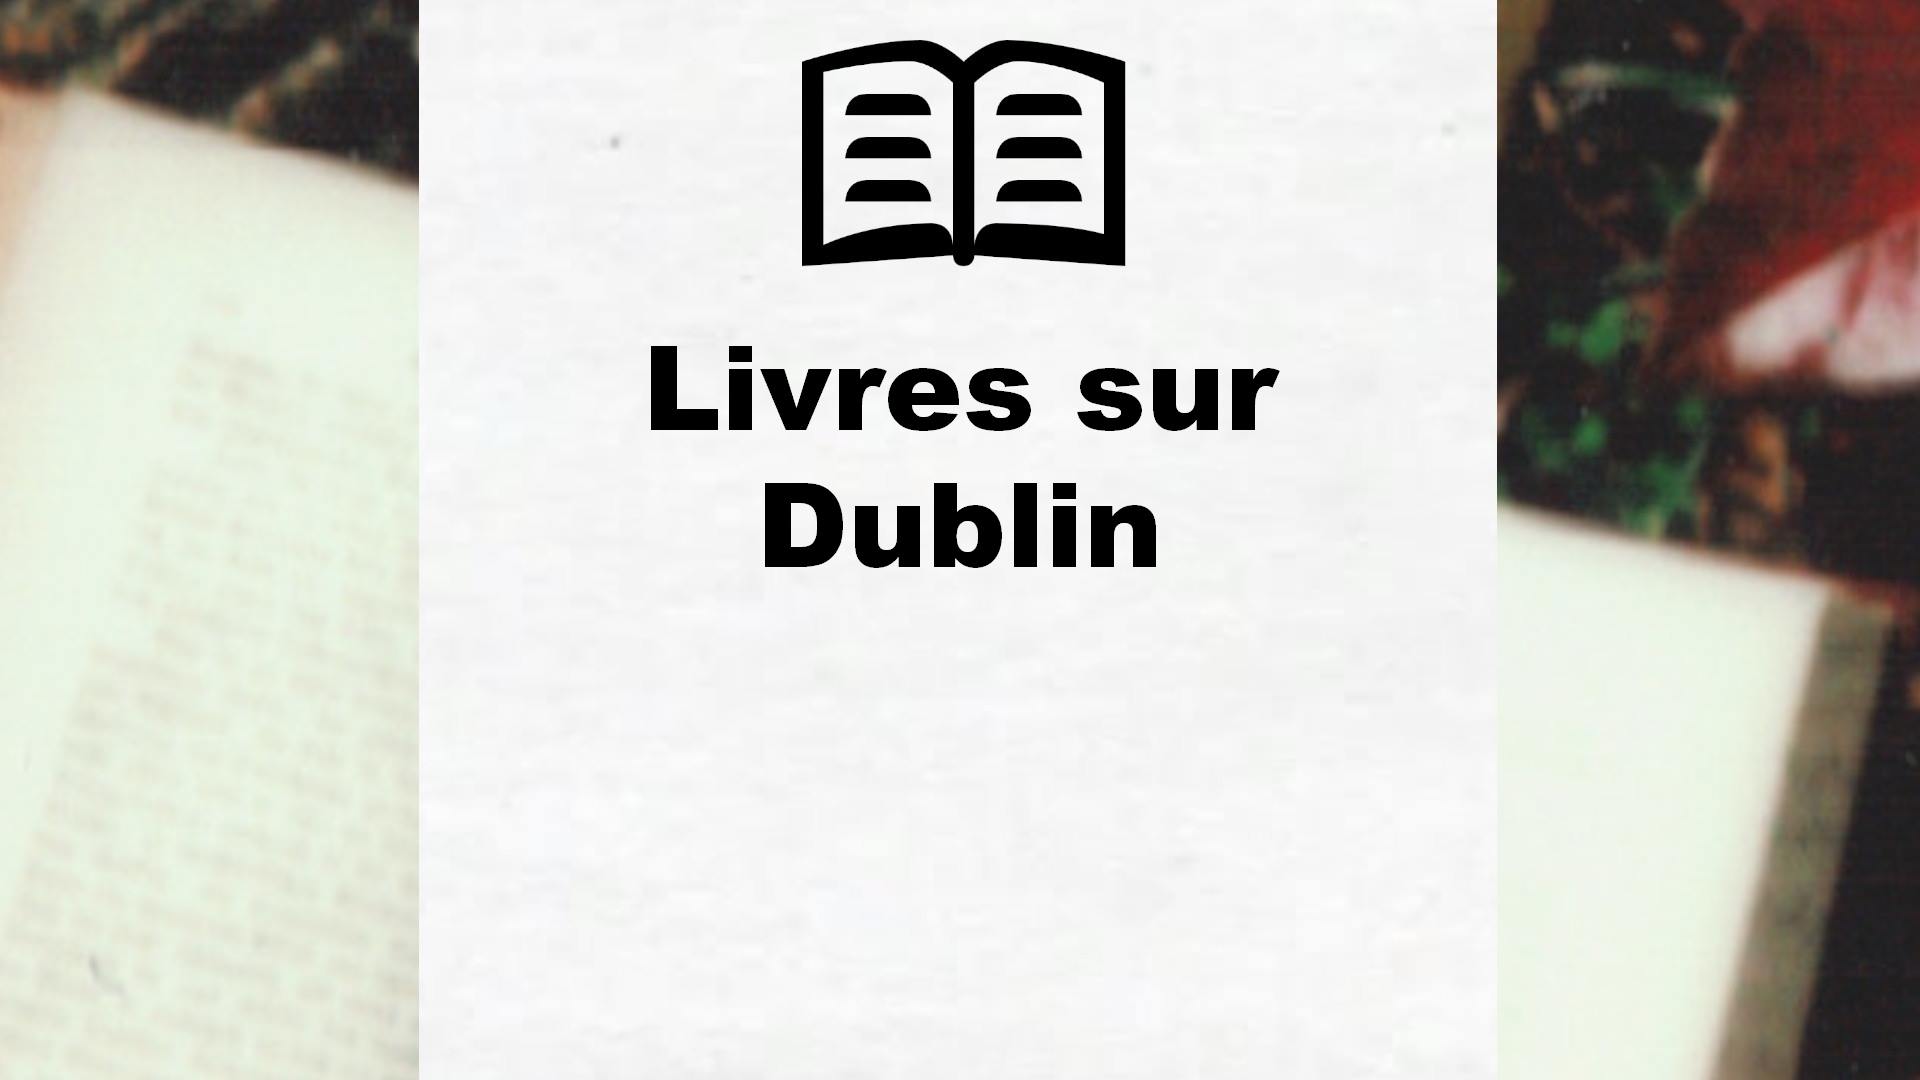 Livres sur Dublin